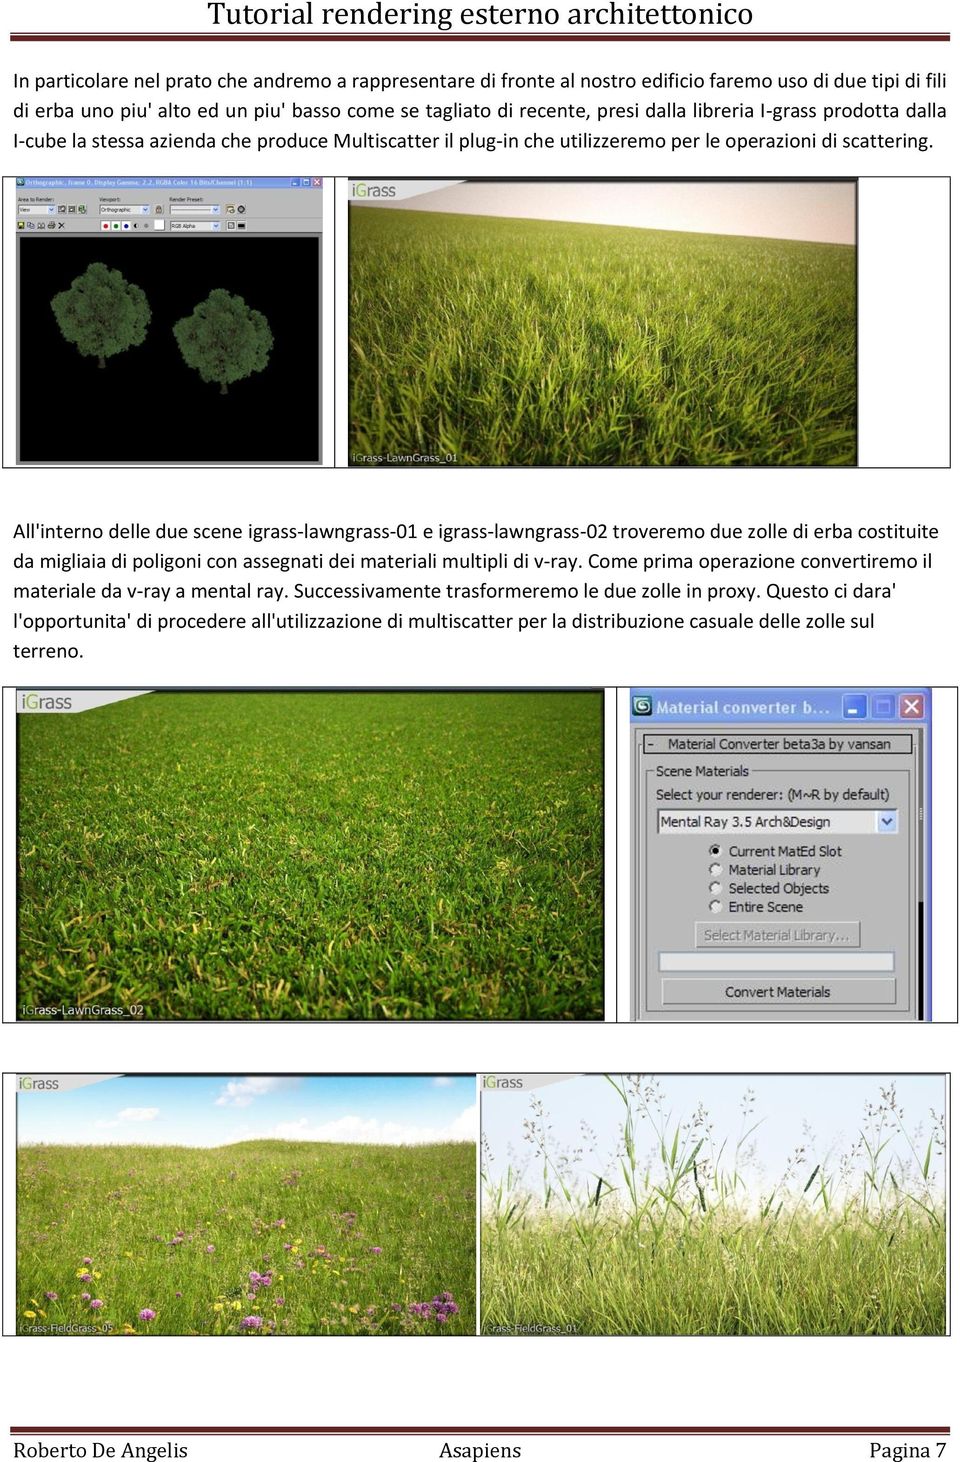 All'interno delle due scene igrass-lawngrass-01 e igrass-lawngrass-02 troveremo due zolle di erba costituite da migliaia di poligoni con assegnati dei materiali multipli di v-ray.